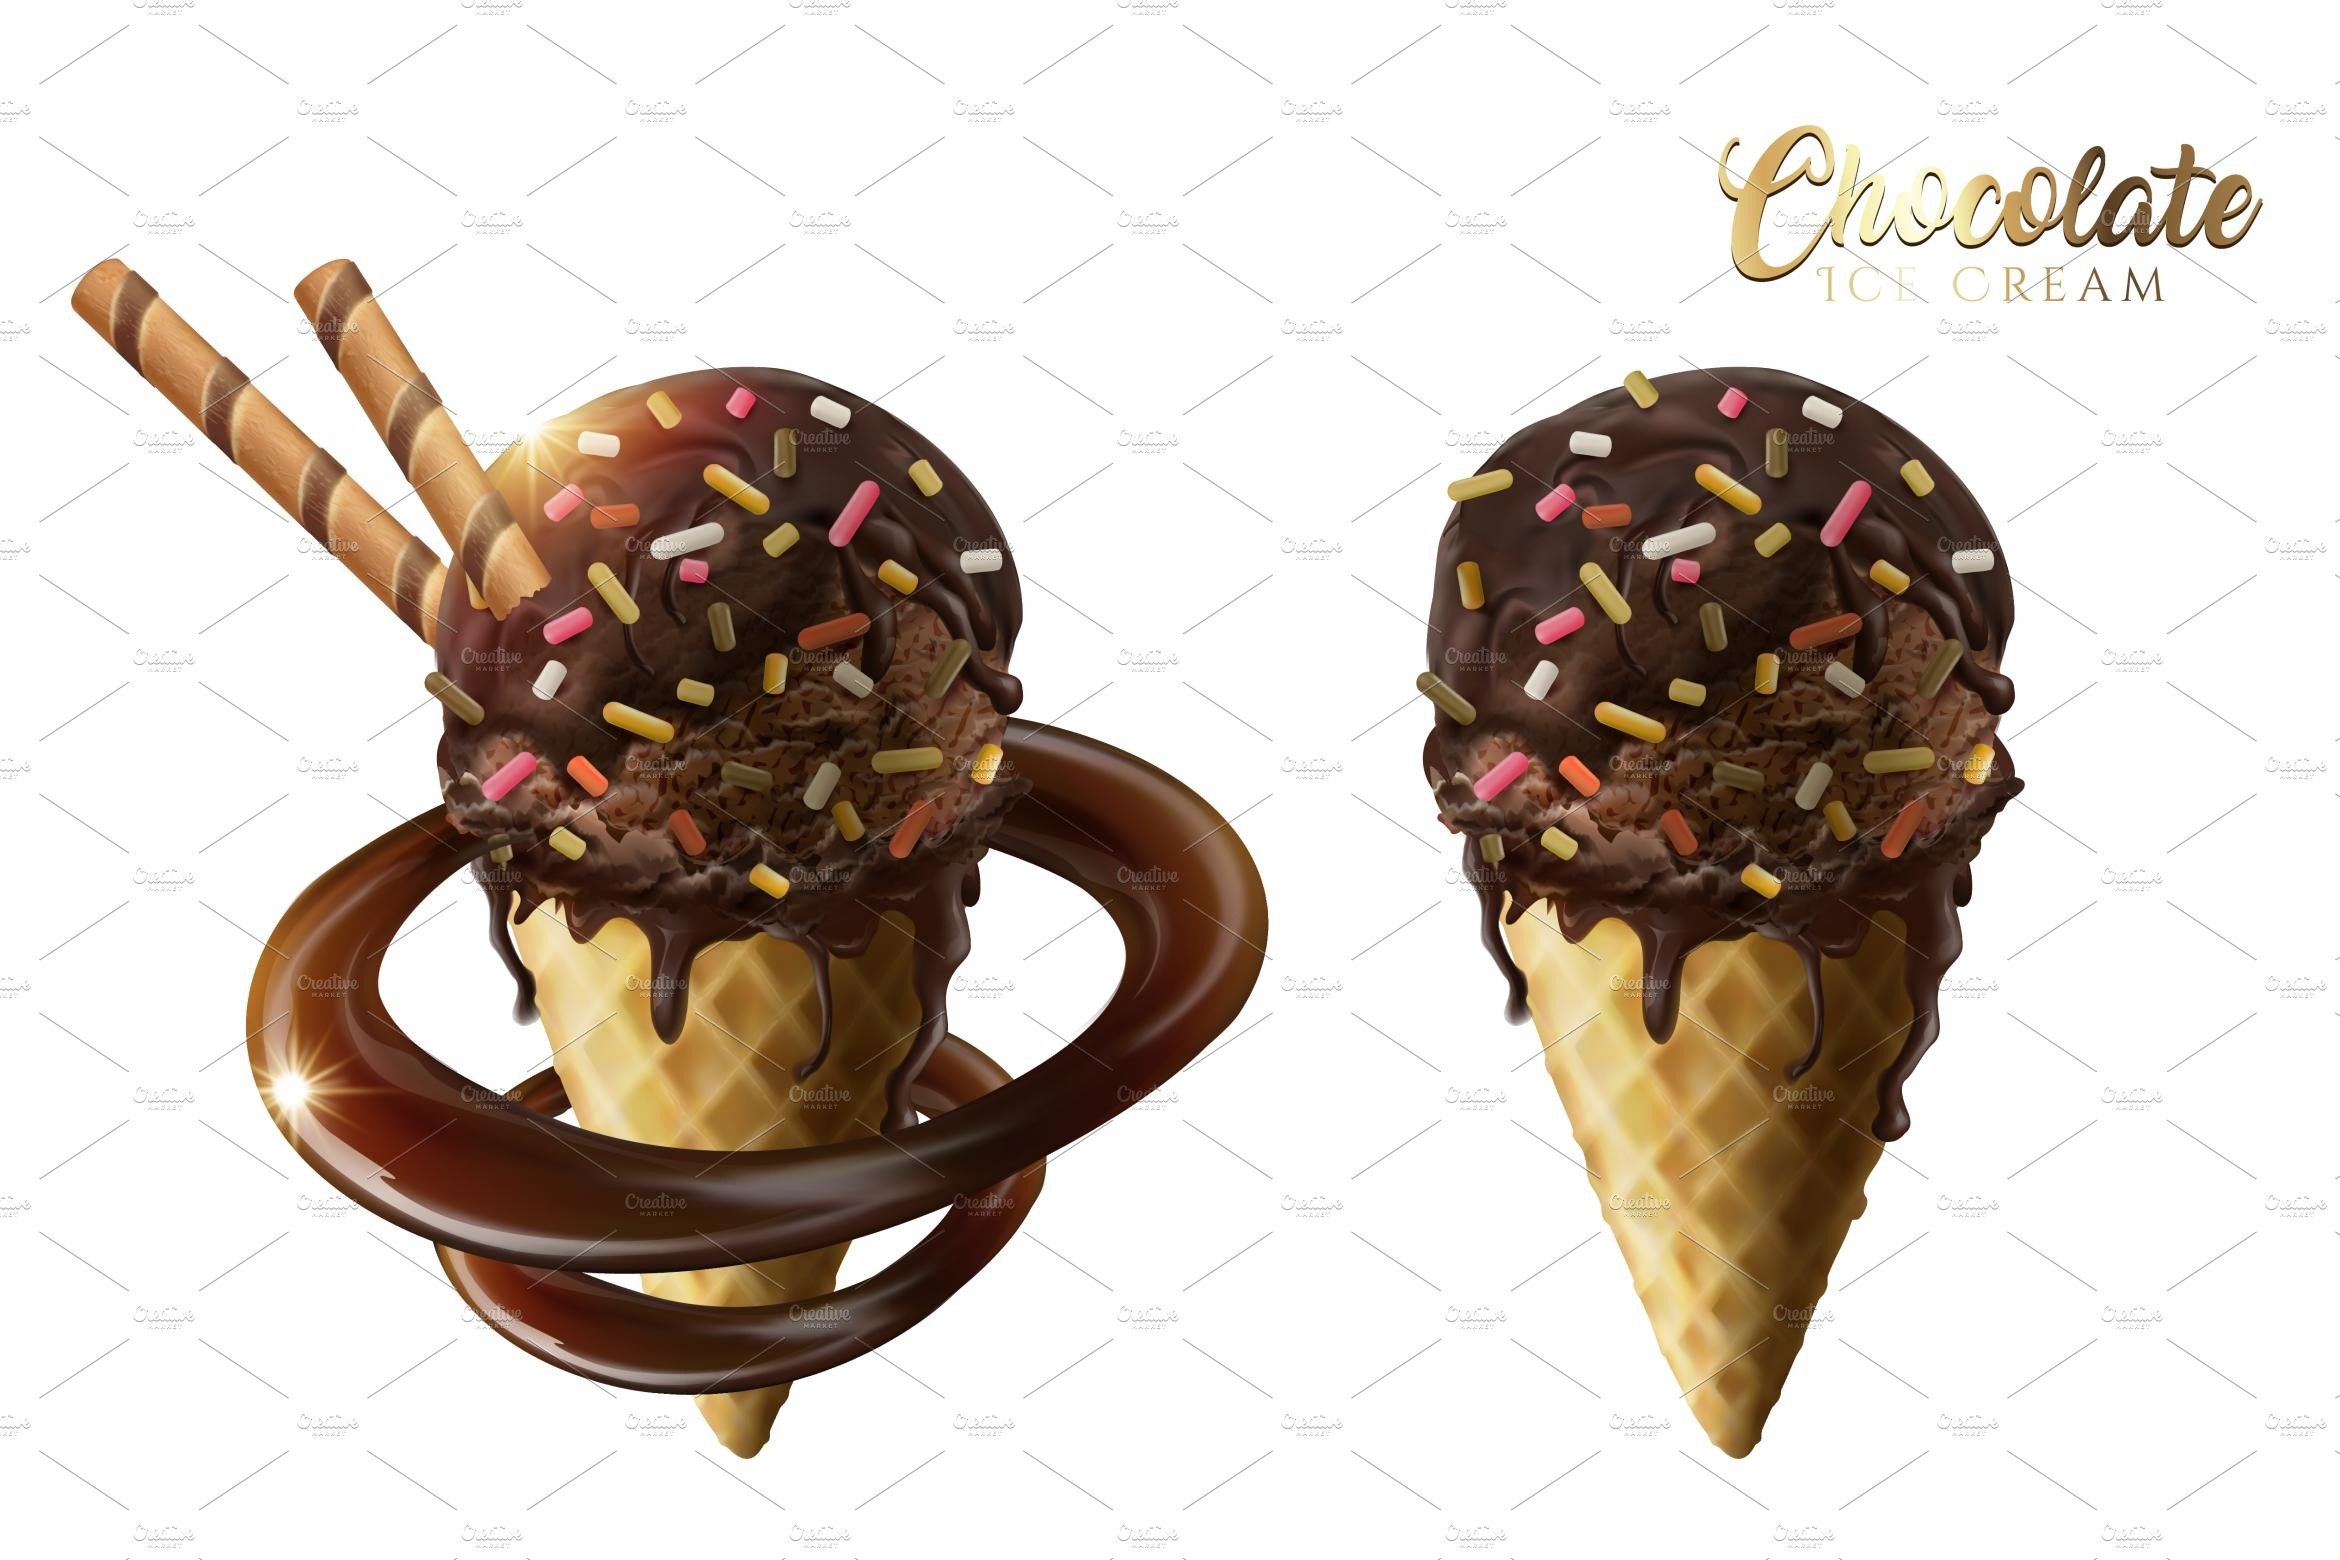 Chocolate ice cream cones cover image.